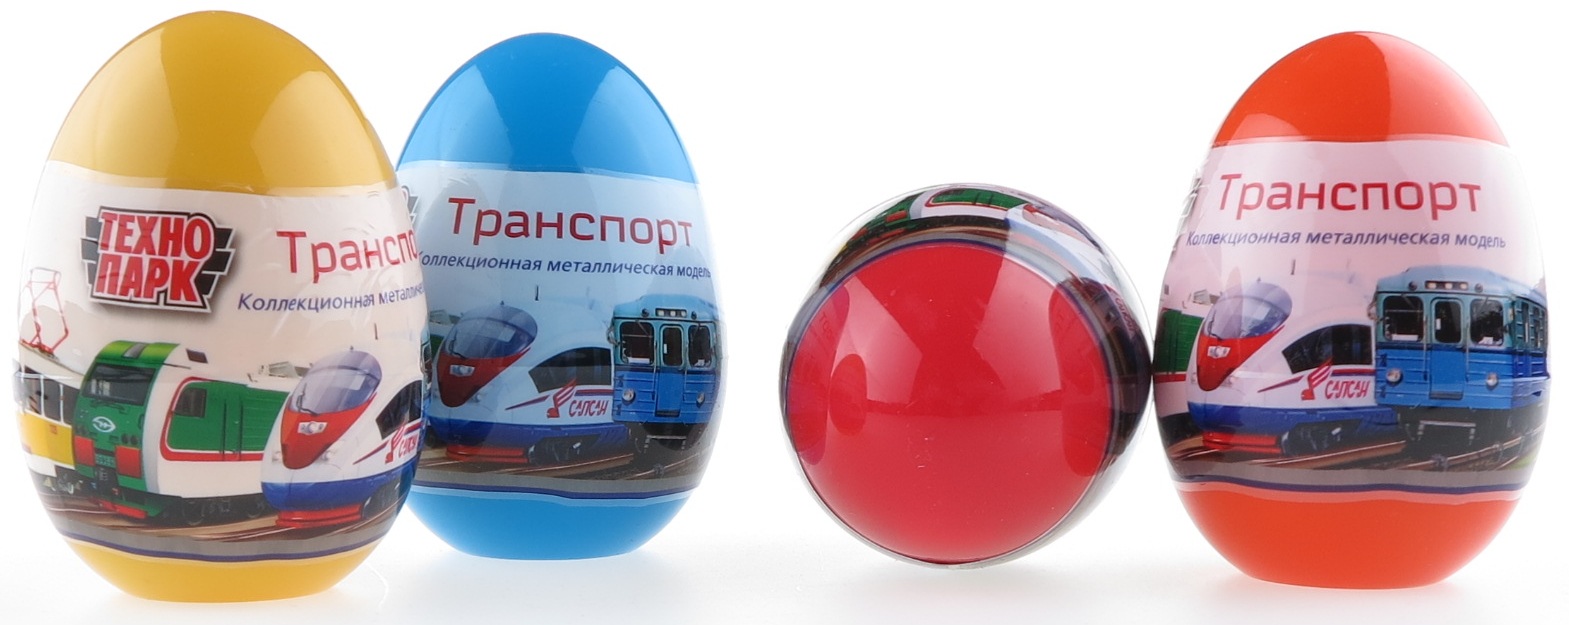 Яйцо-сюрприз. Московский городской транспорт  